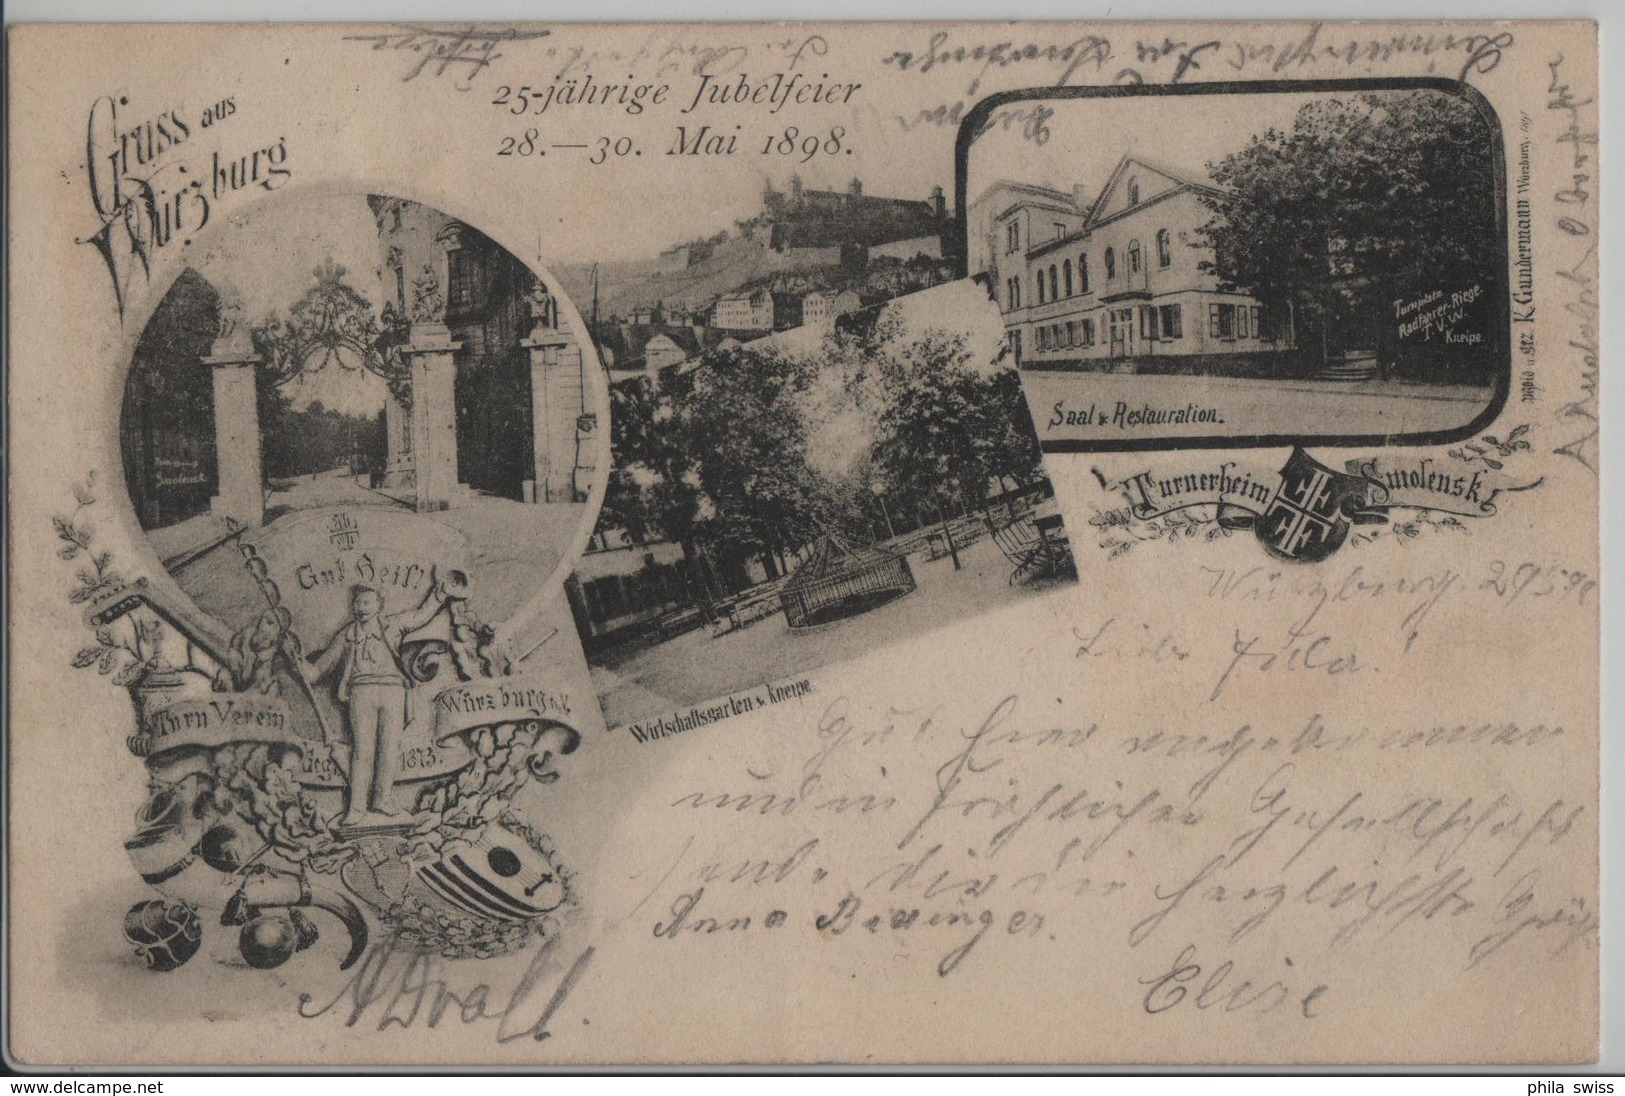 Gruss Aus Würzburg - Turnerheim Smolensk, 25-jährige Jubelfeier Mai 1898, Saal & Restauration, Wirtschaftsgarten & Kneip - Wuerzburg